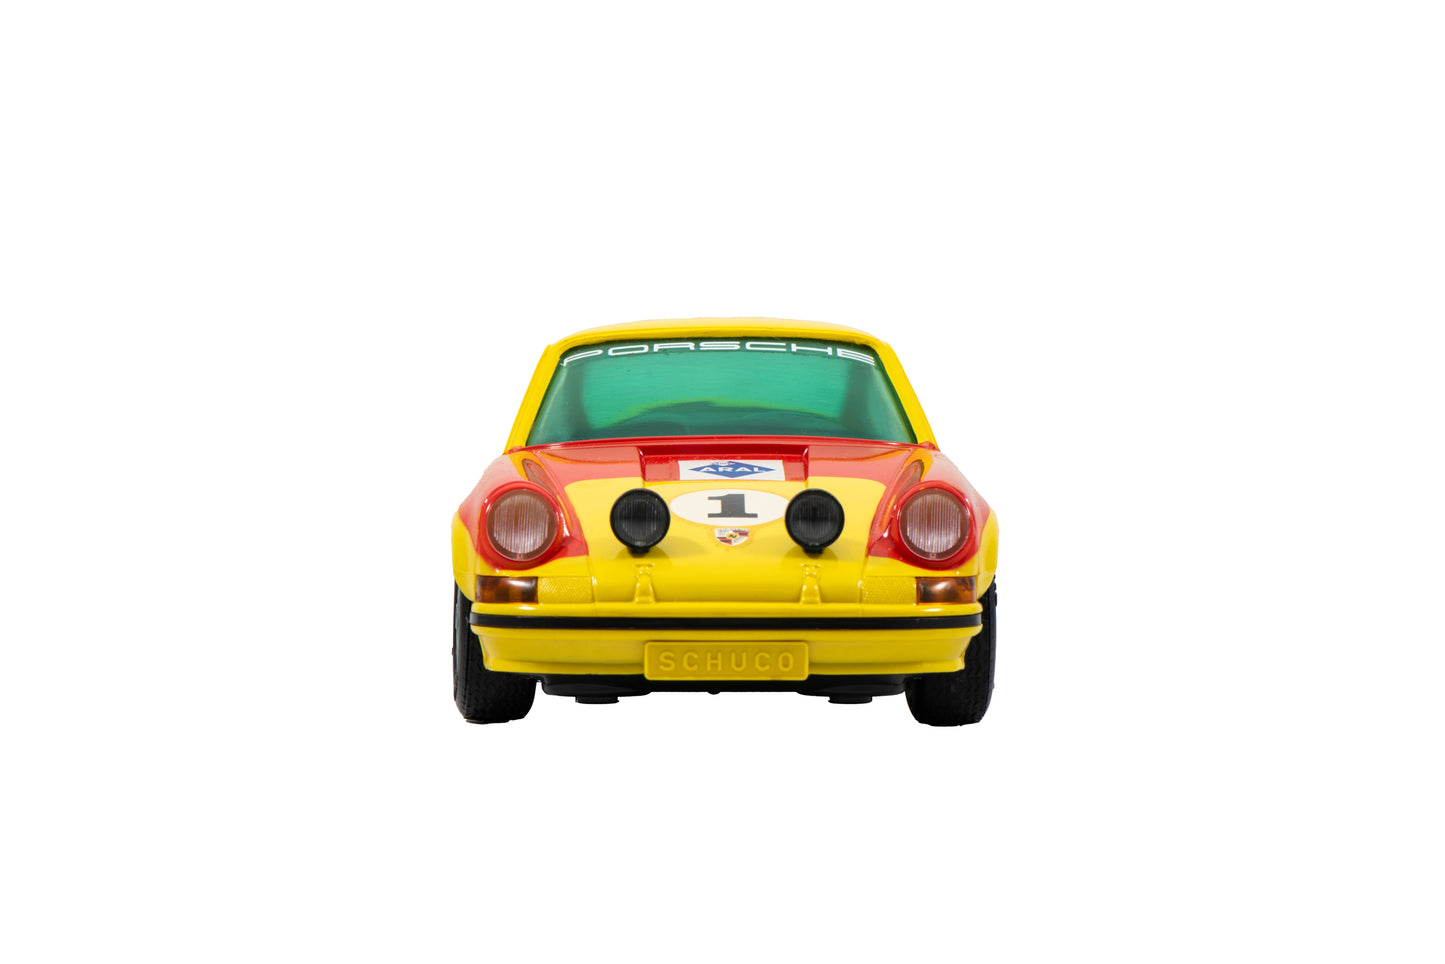 Porsche 911R Toy from Schuco